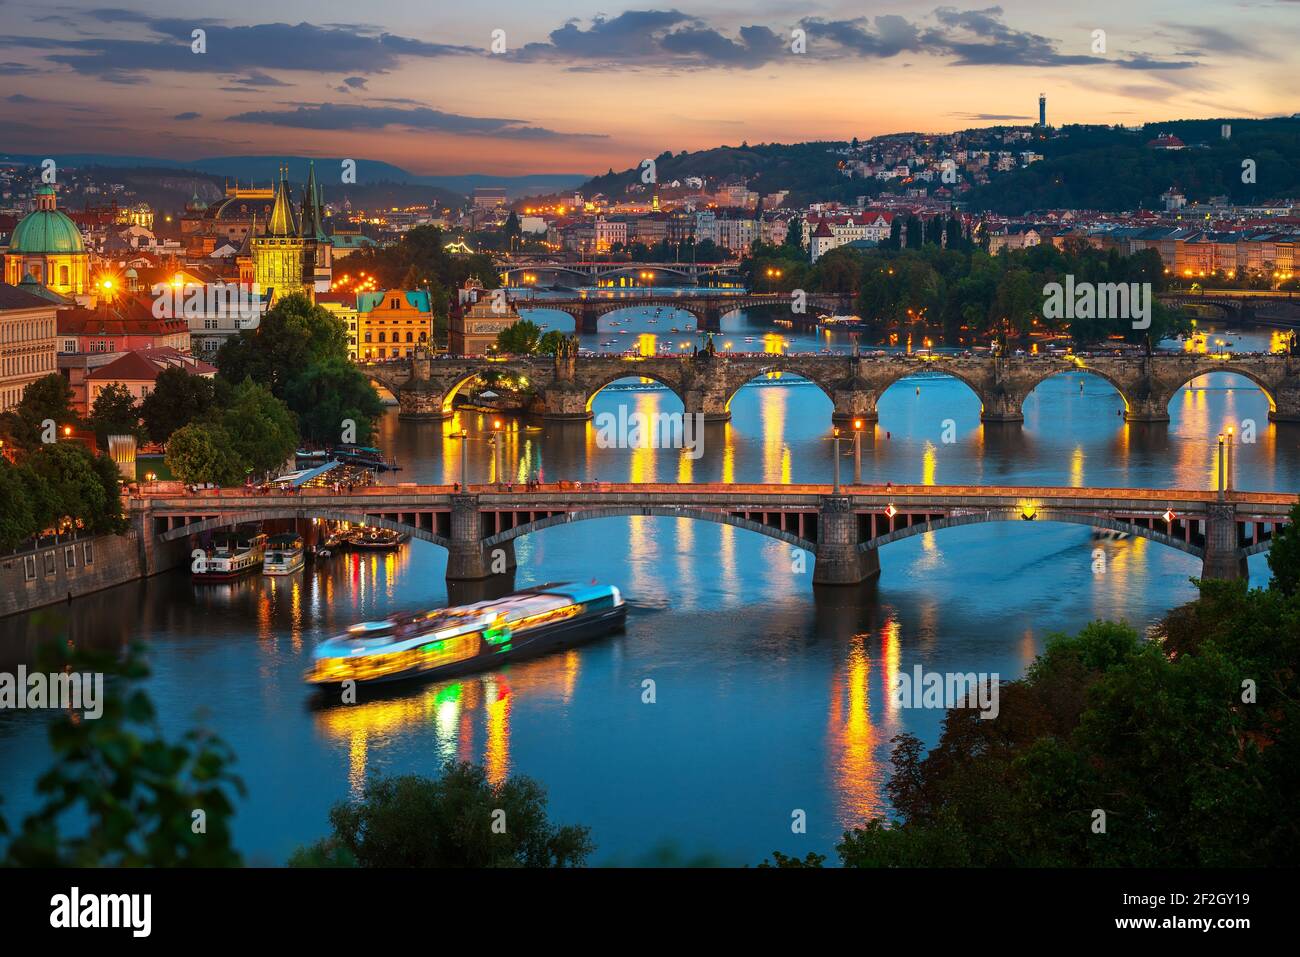 Illuminated bridges in Prague on river Vltava at sunset Stock Photo